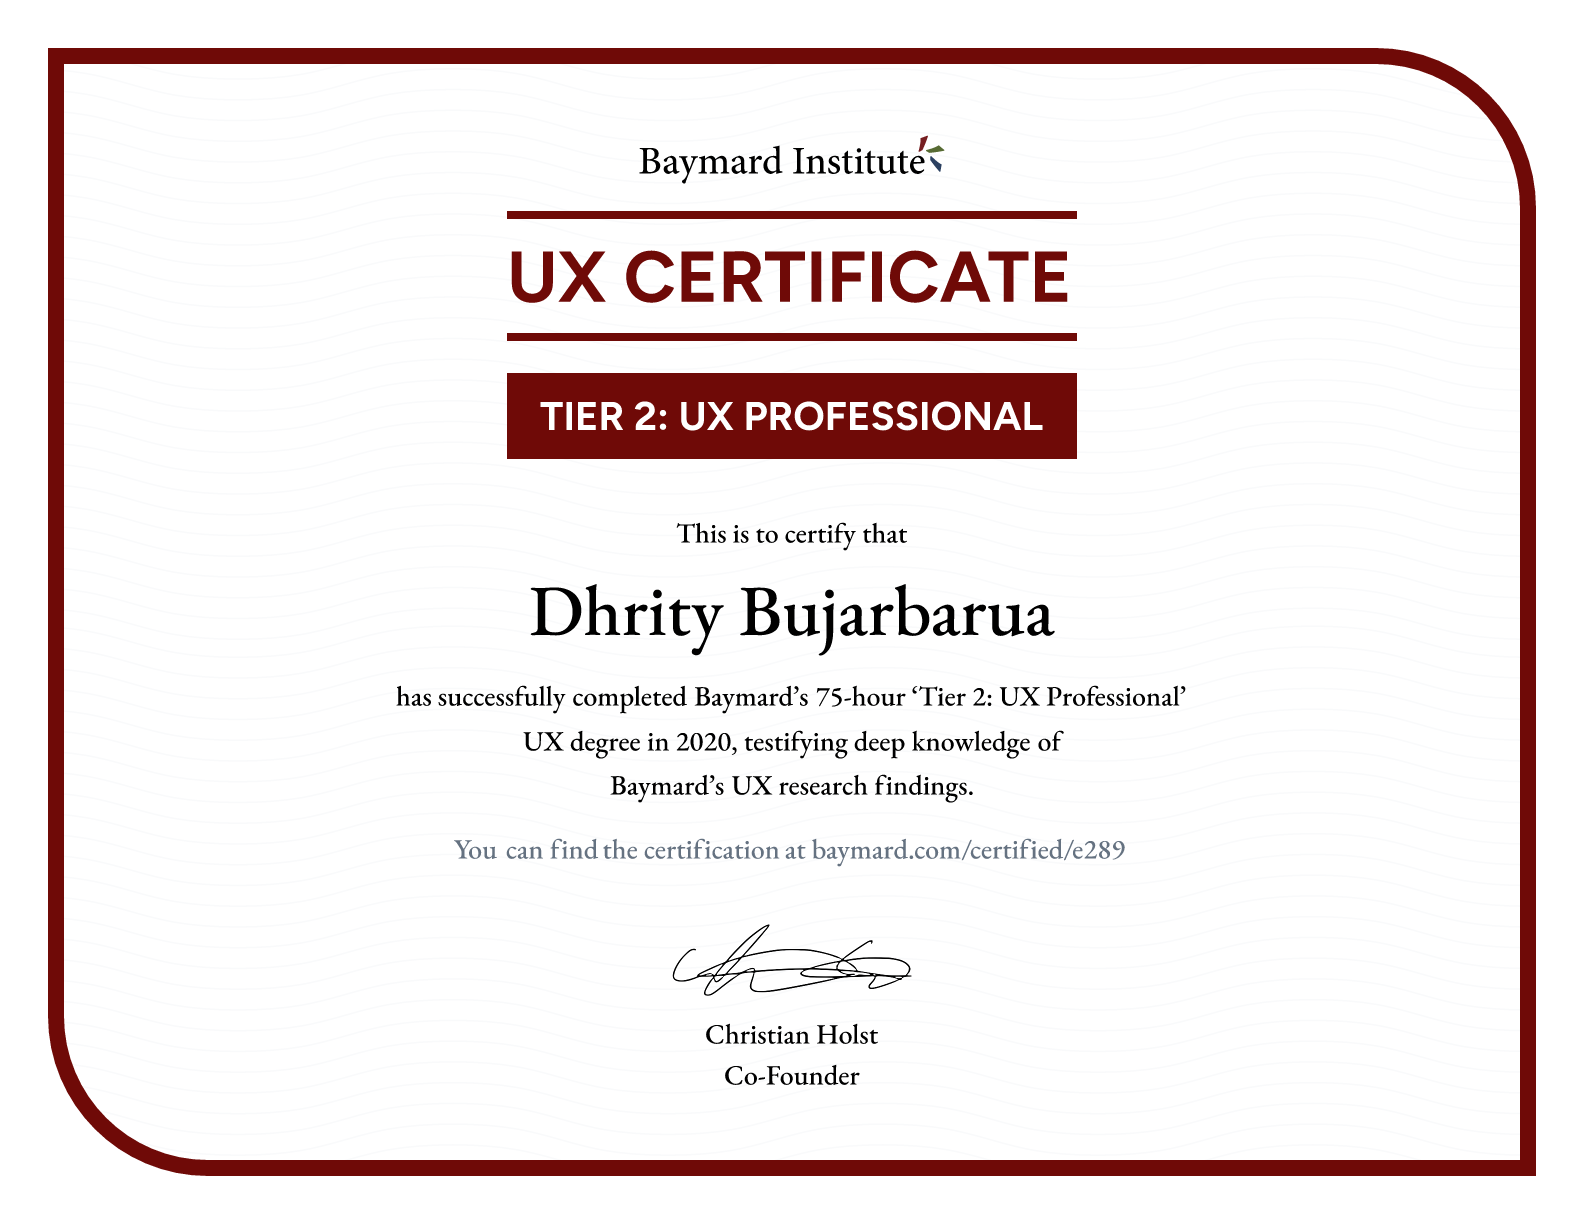 Dhrity Bujarbarua’s certificate